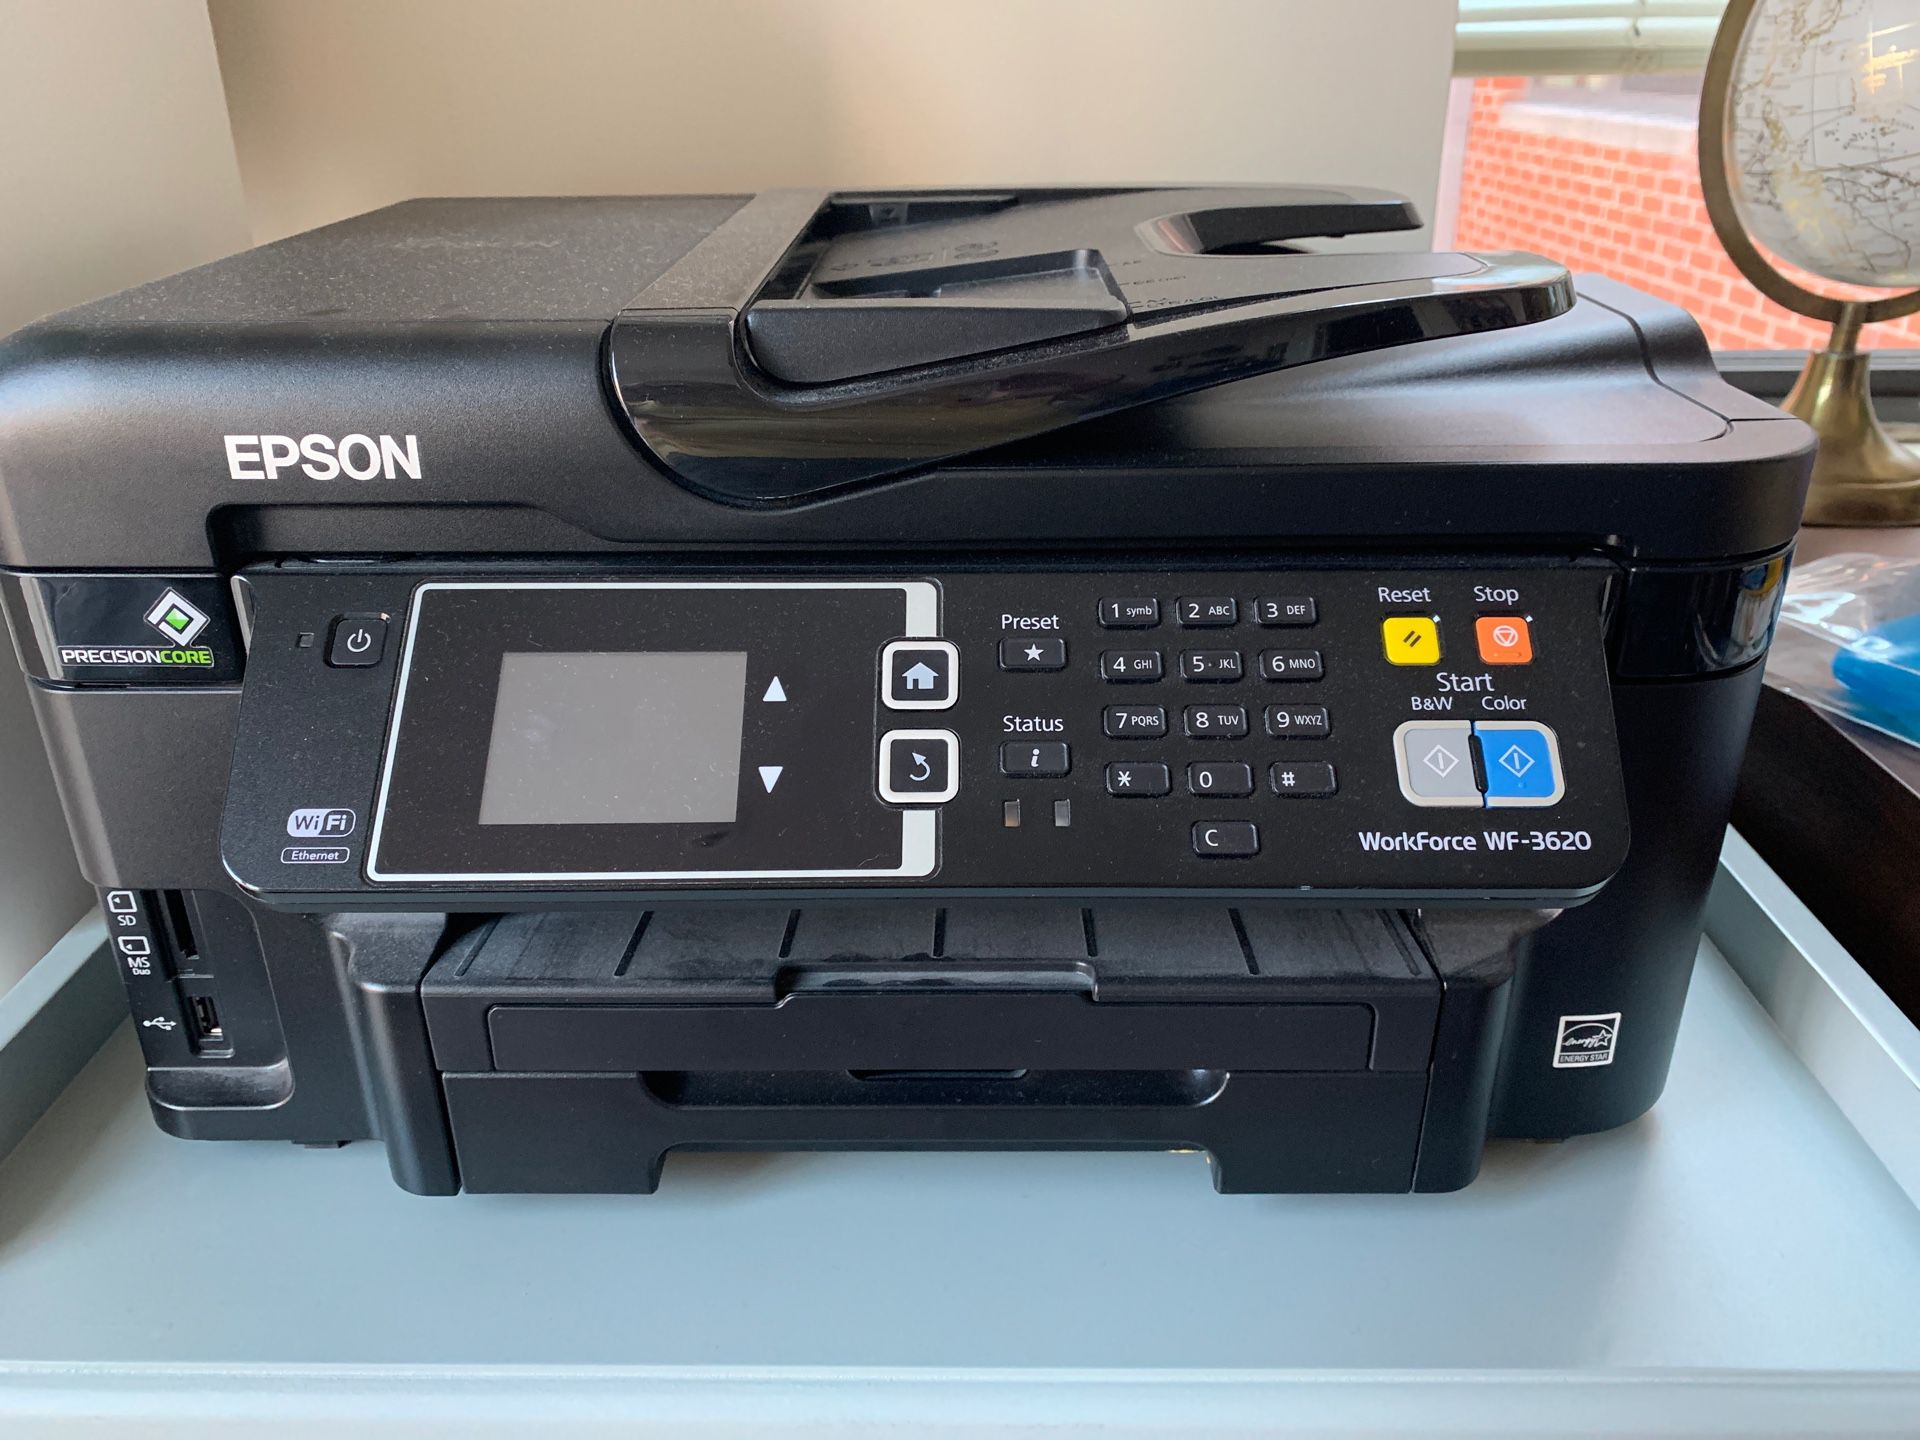 Epson WF-3620 Printer